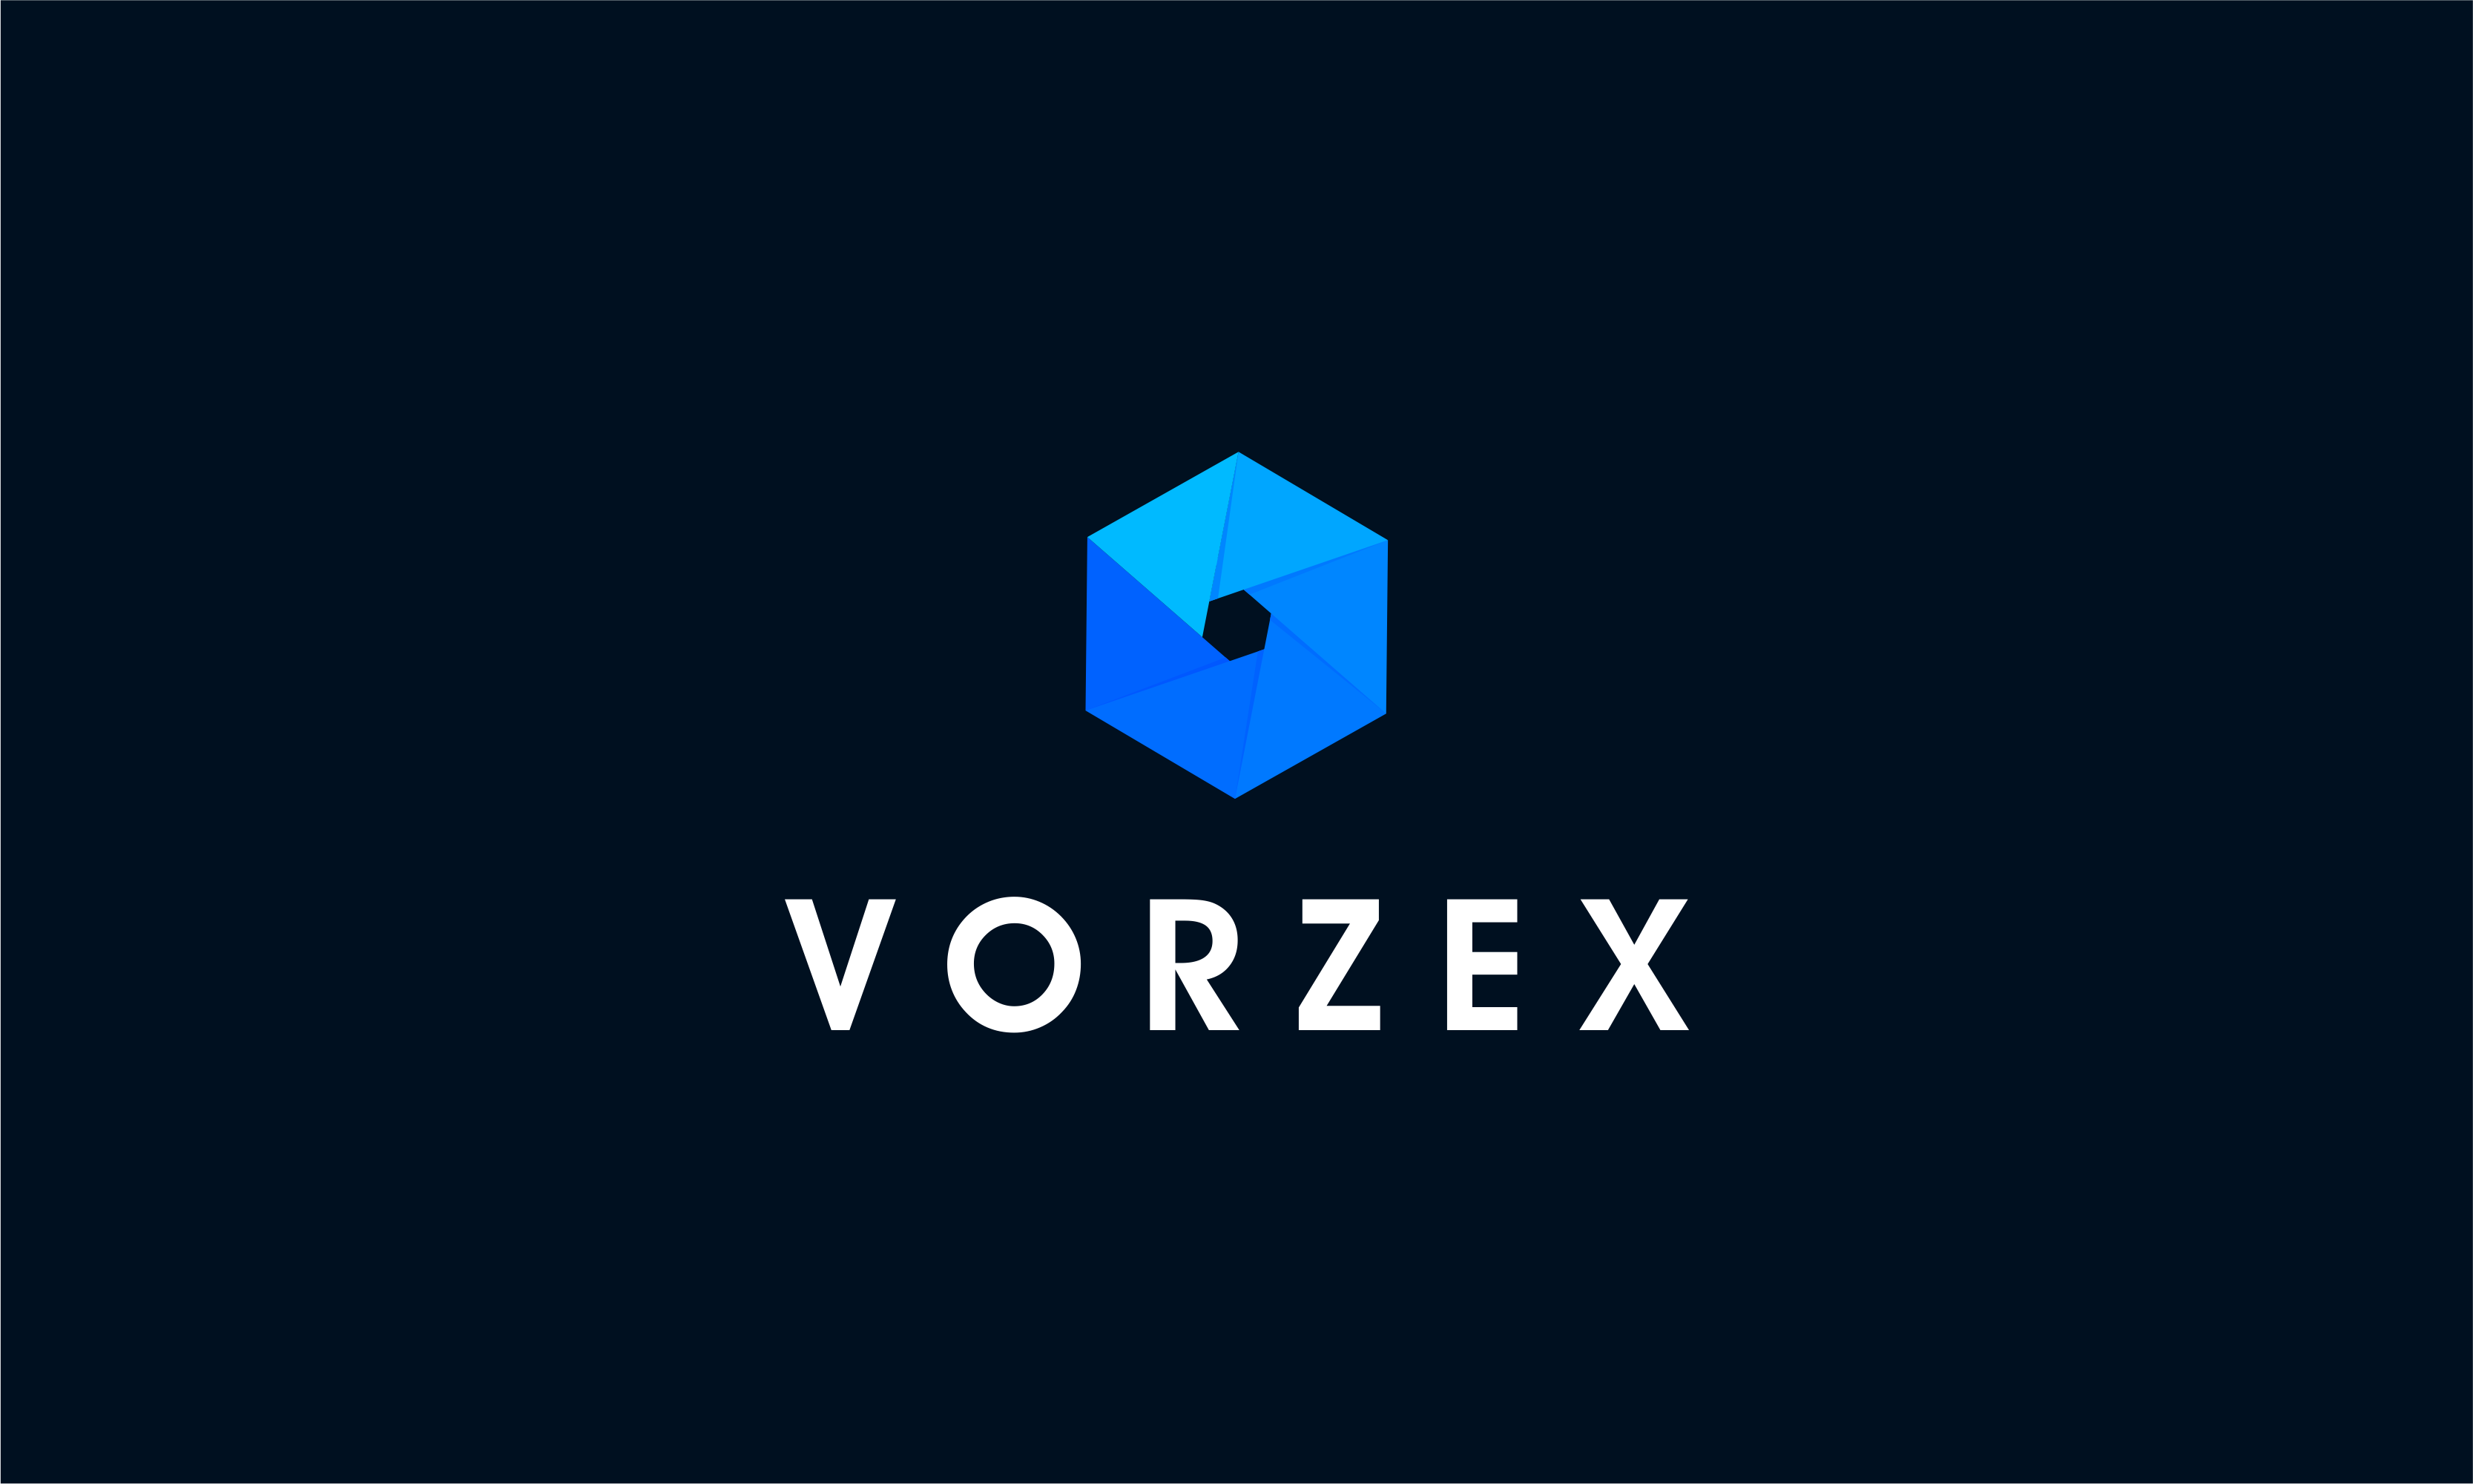 Vorzex.png